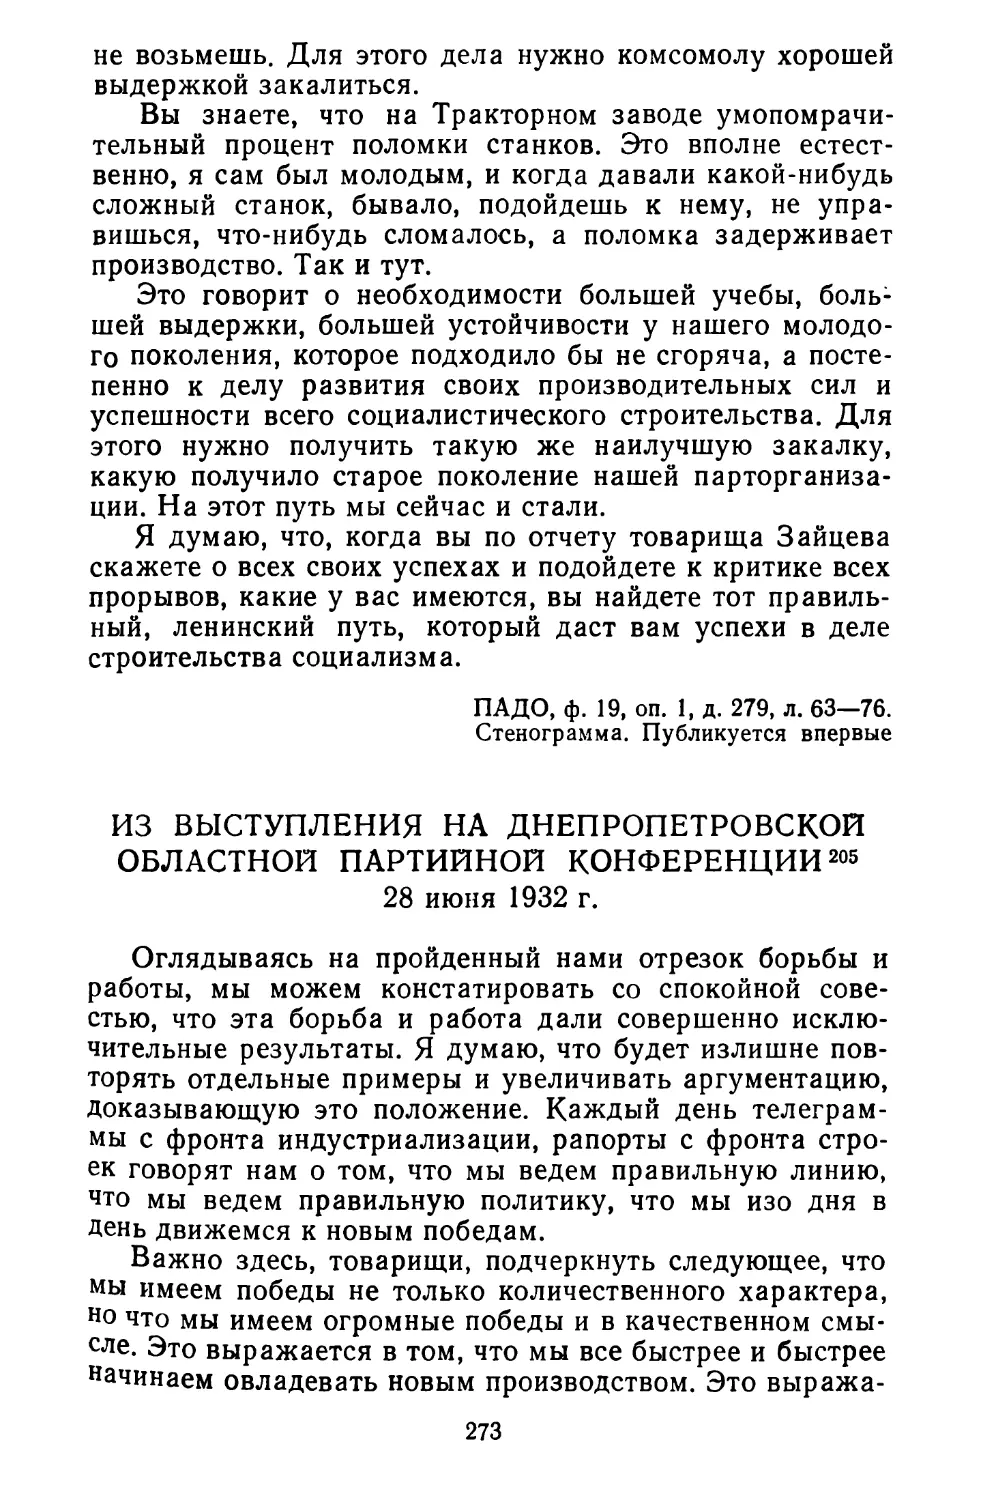 Из выступления на Днепропетровской областной партийной конференции. 28 июня 1932 г.